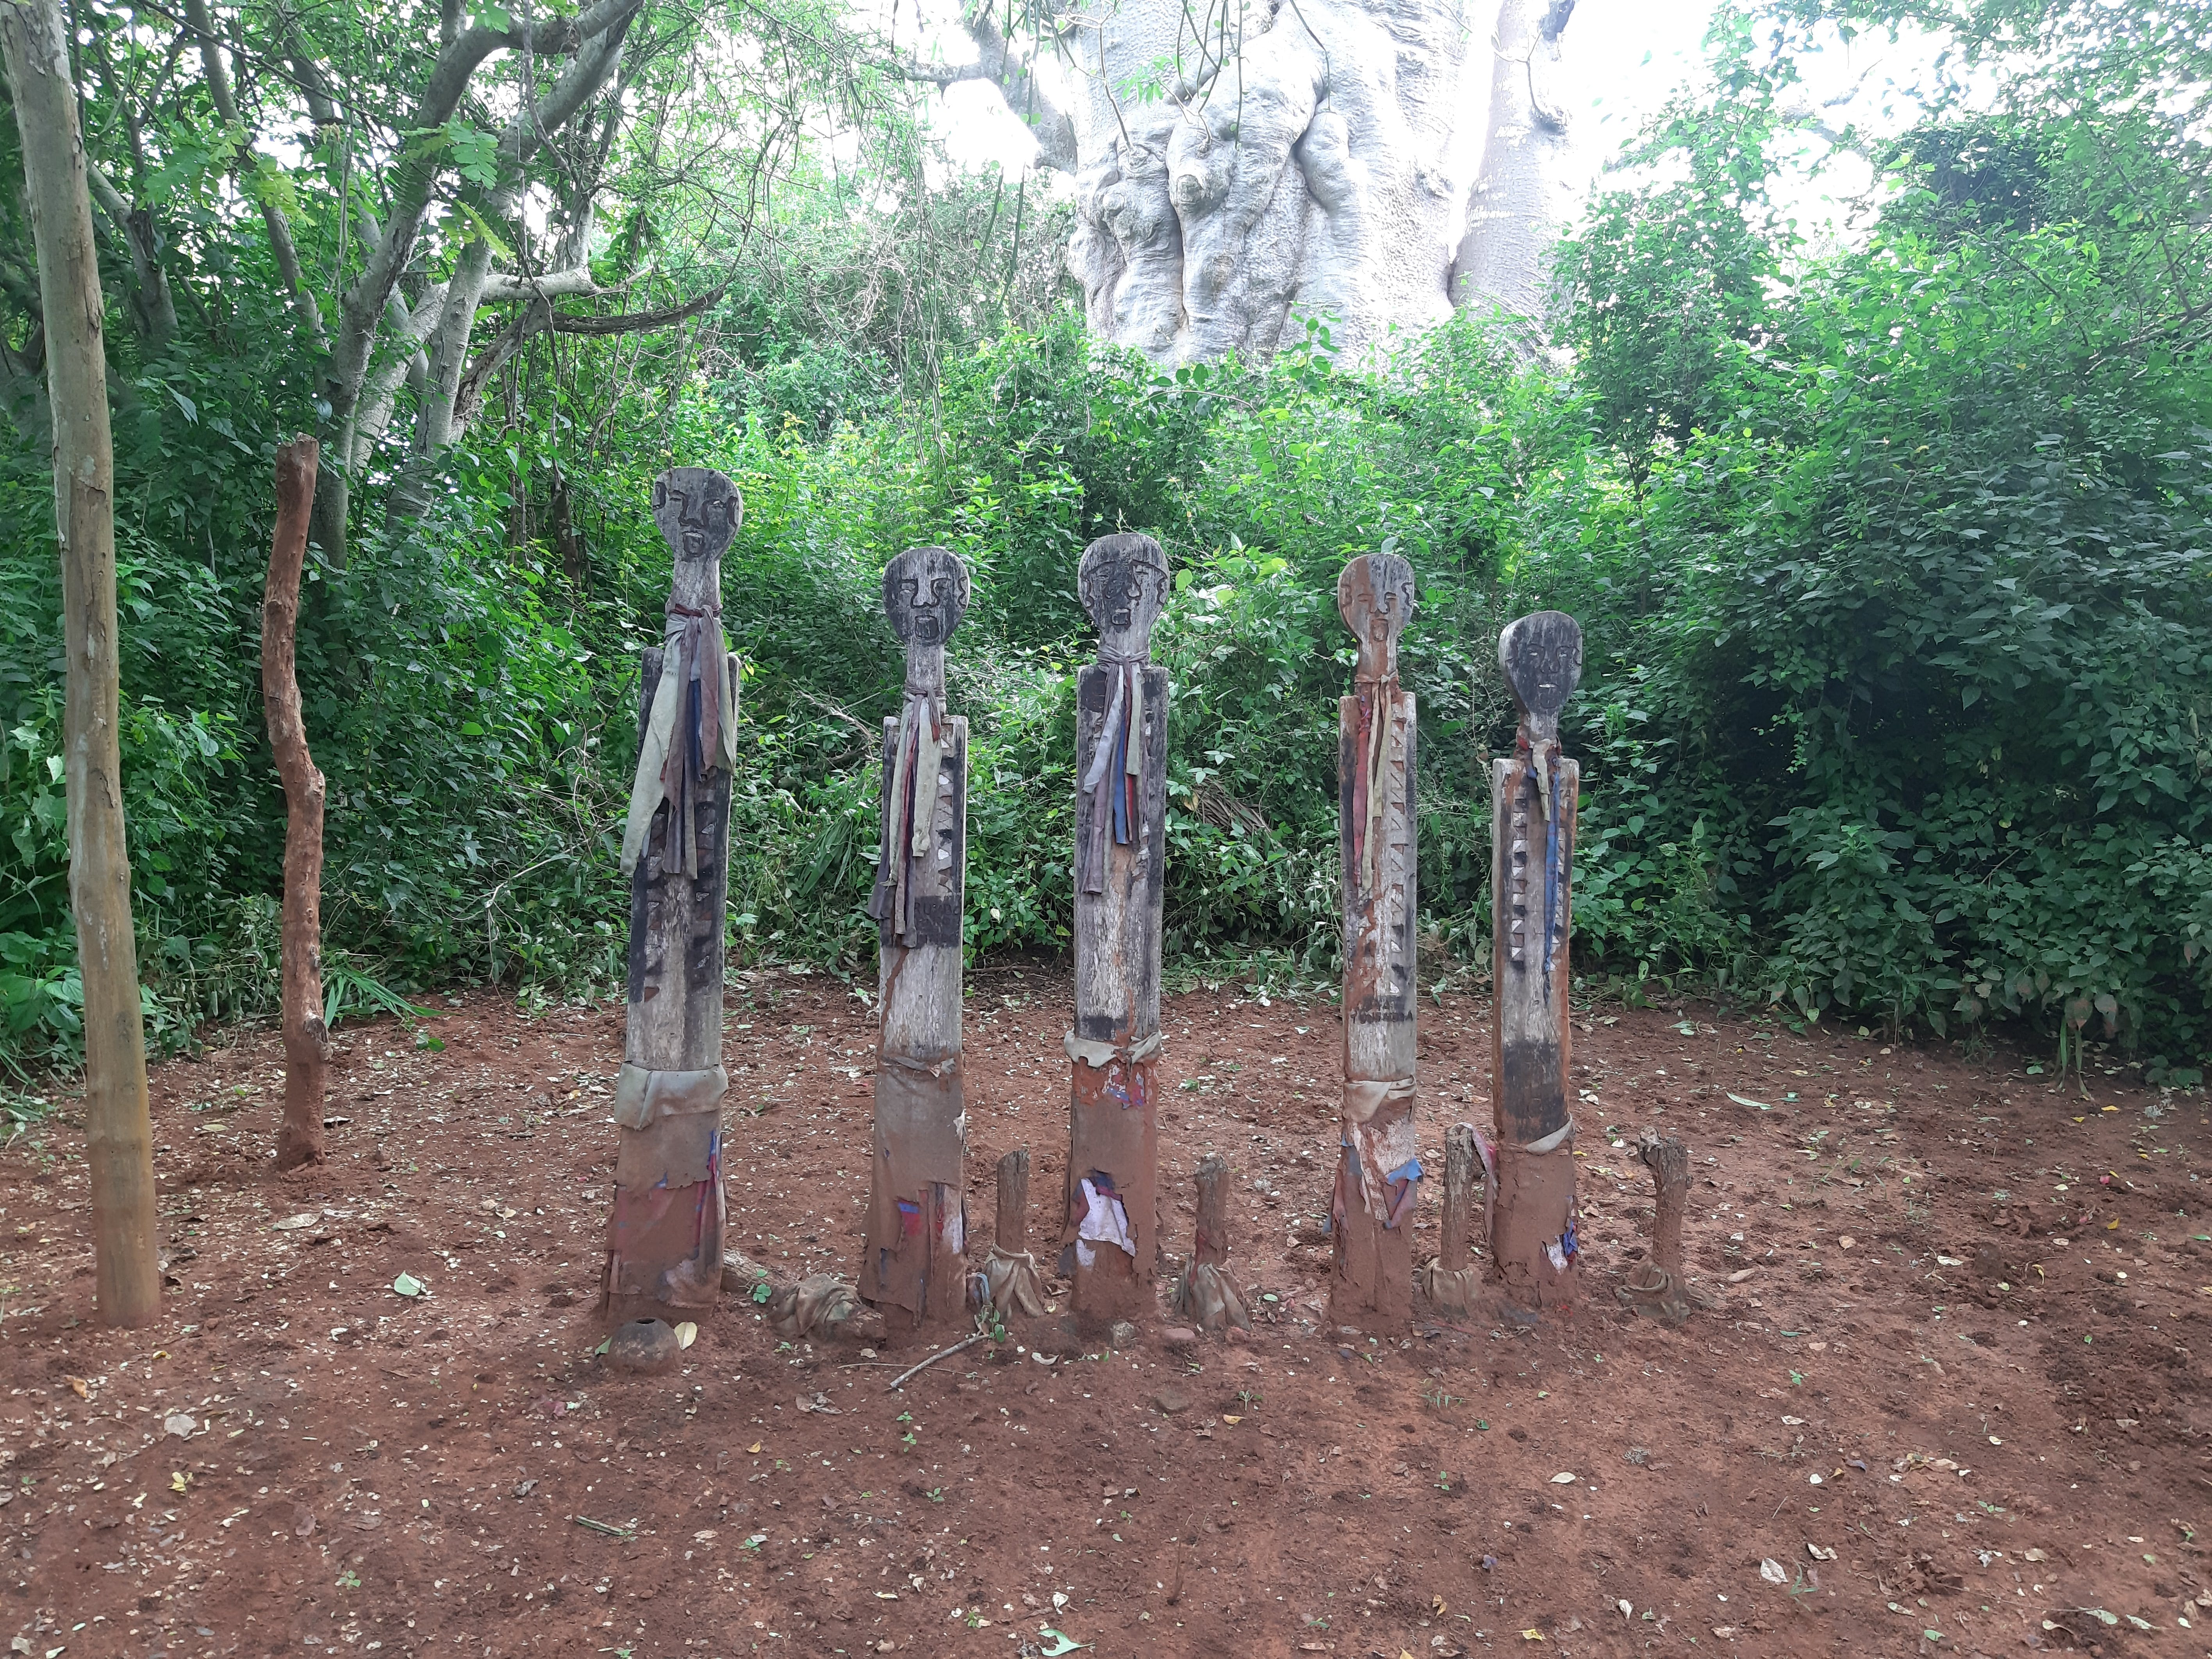 Wooden carvings representing deceased Mijikenda elders